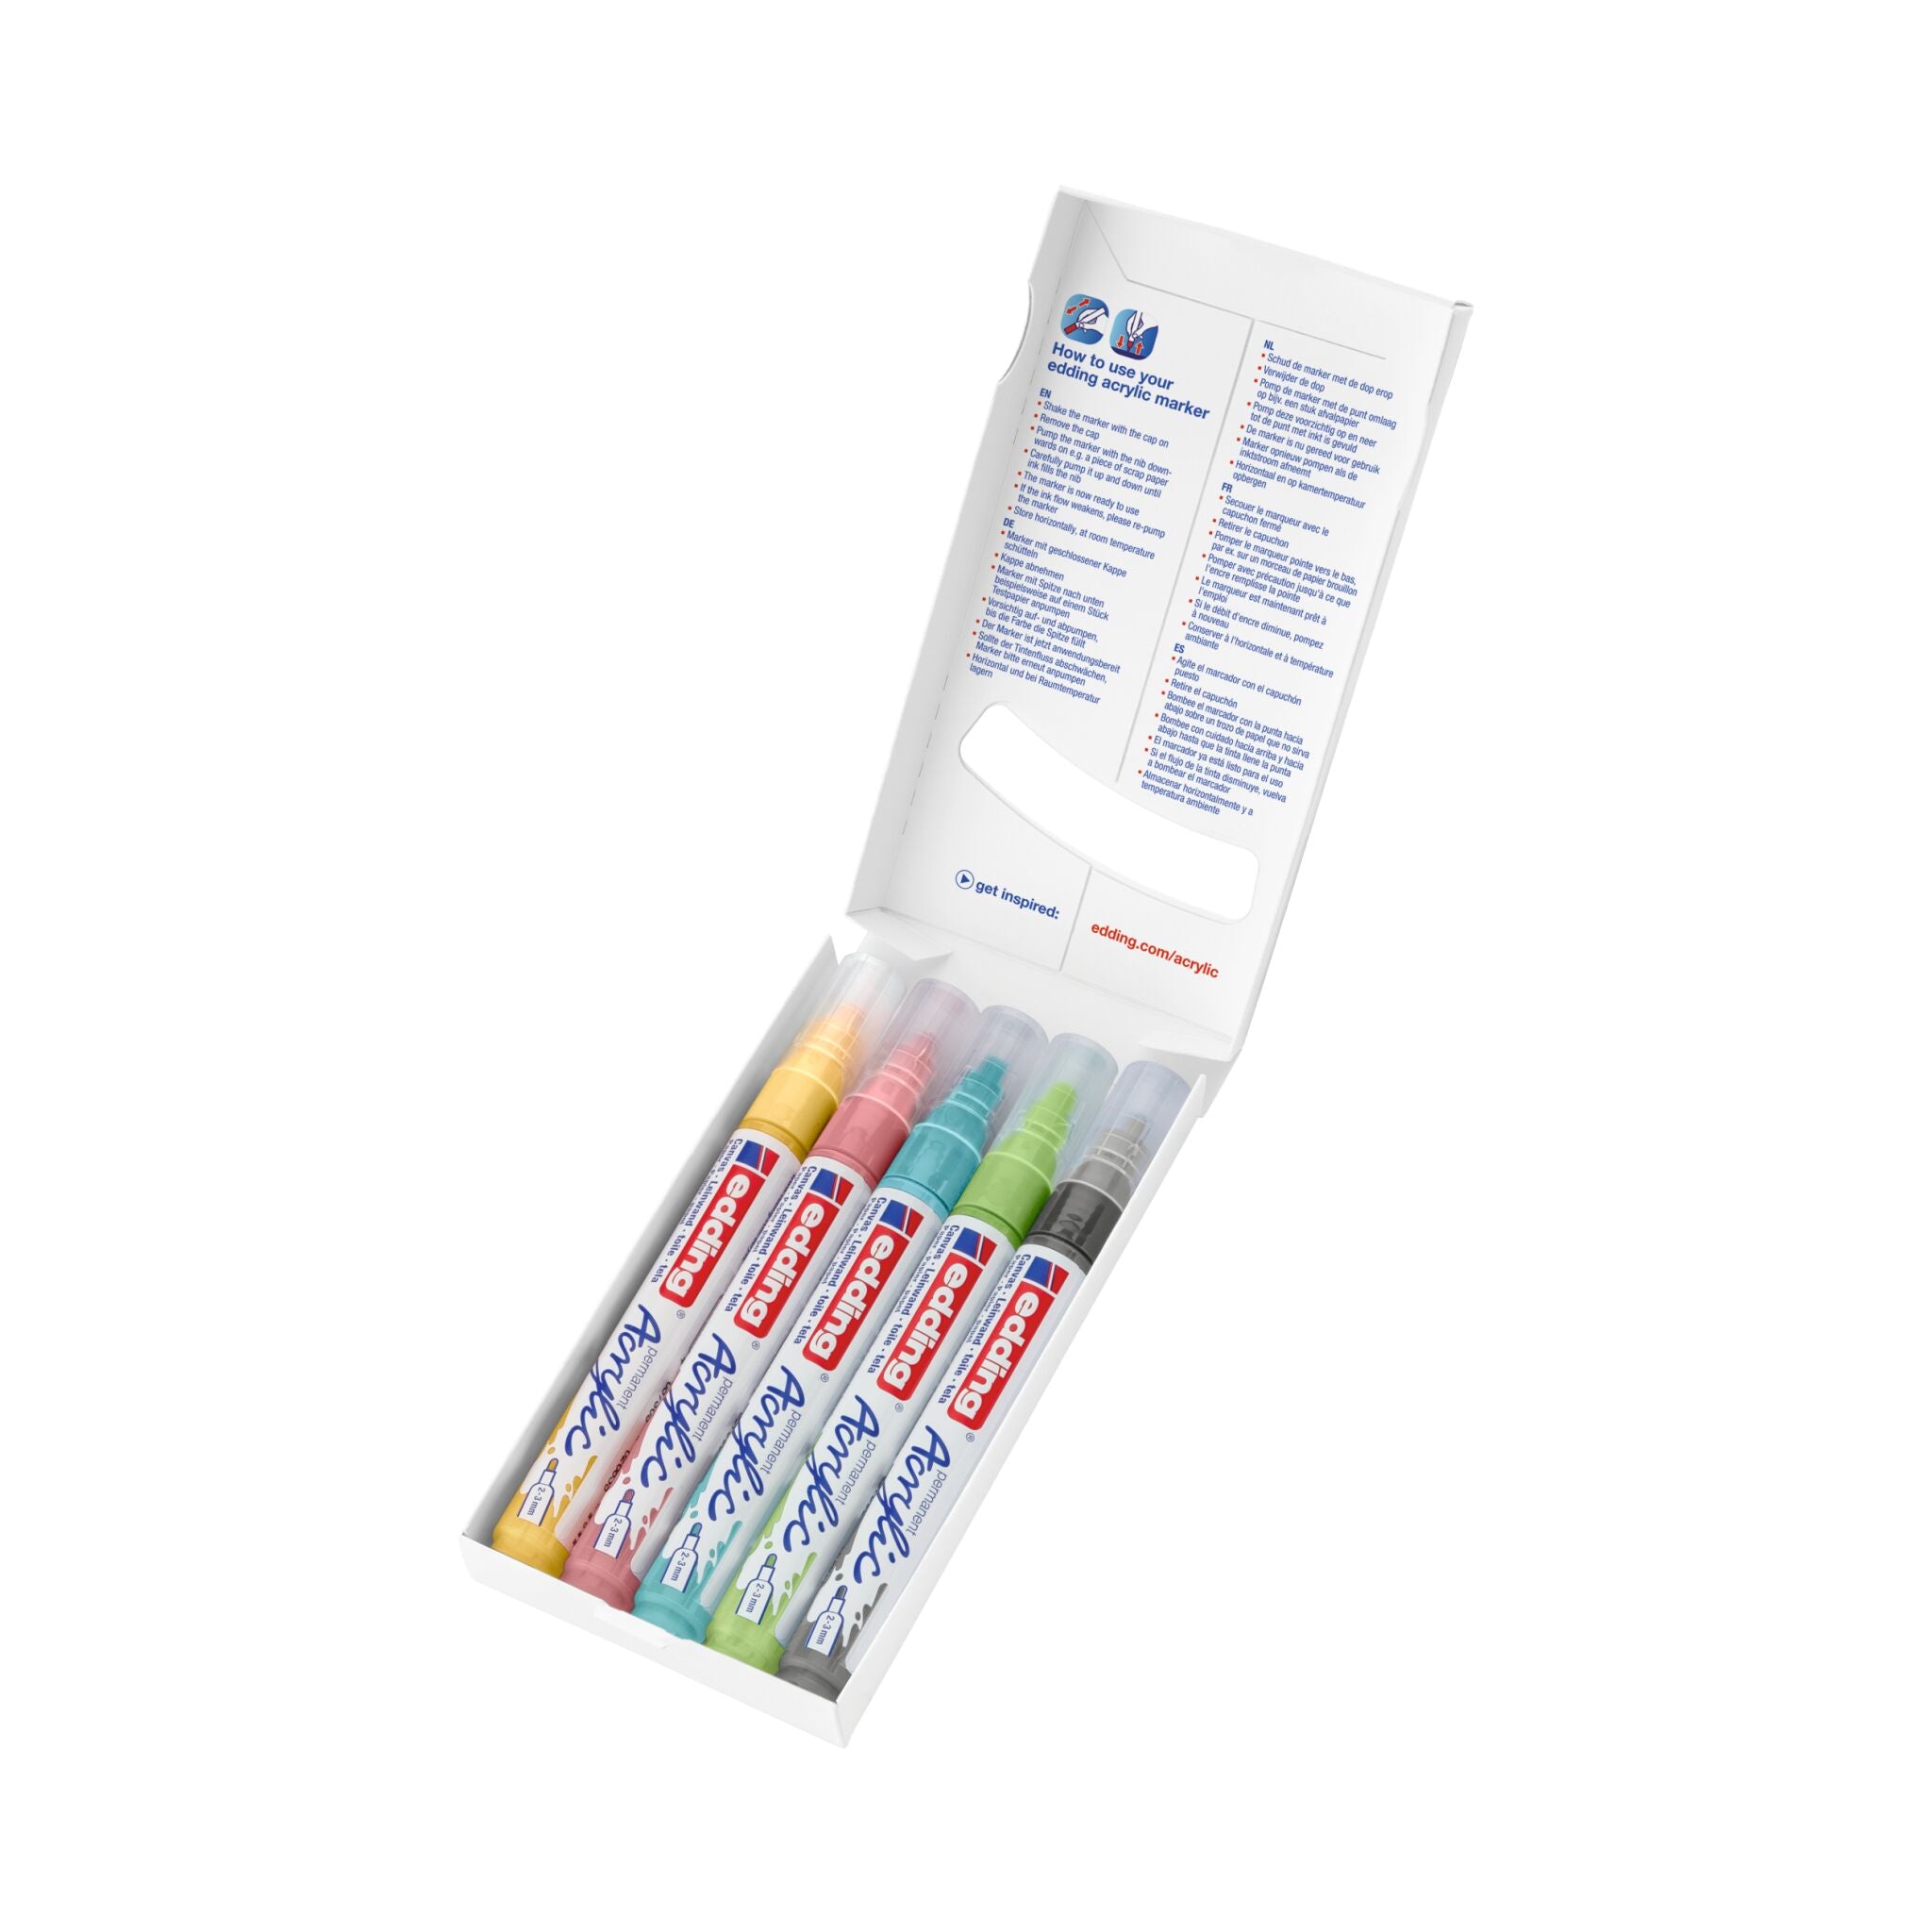 Ein Satz farbenfroher edding 5100 Acrylmarker-Stifte in einer Verpackung, ordentlich präsentiert, wobei die Kappen sichtbar sind und eine Vielzahl von Farben zeigen.